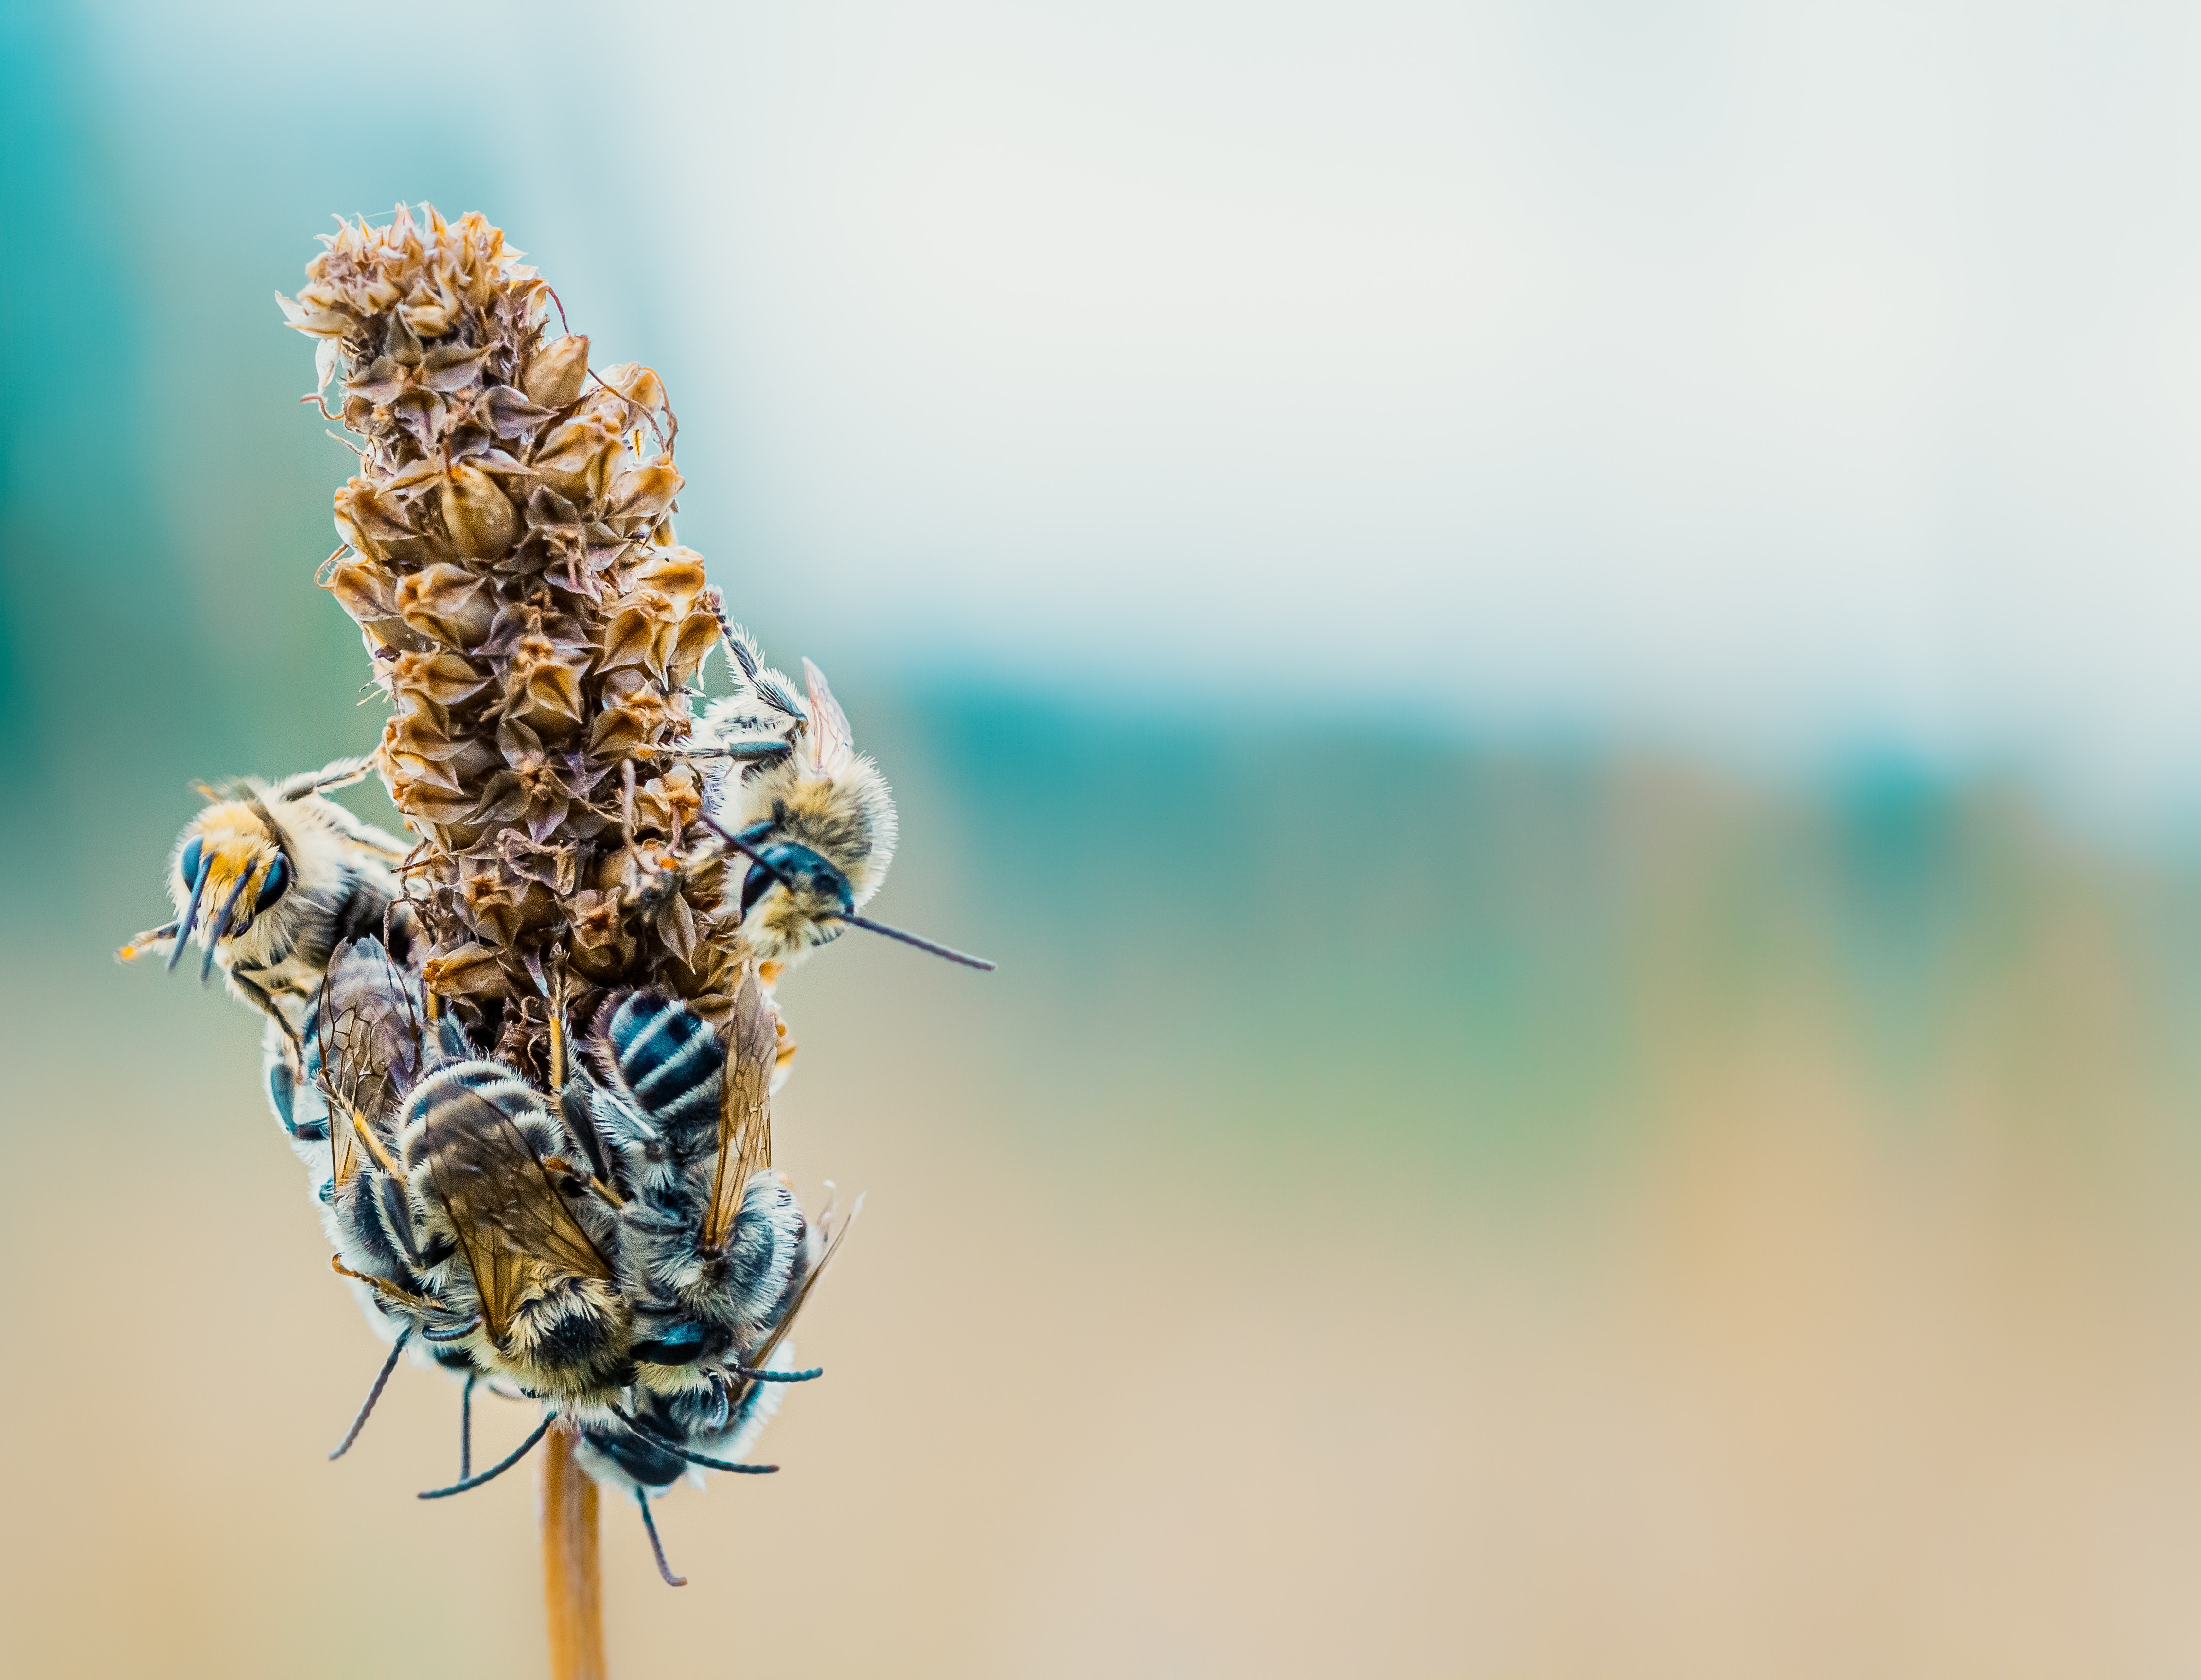 Крайне важно сделать доступными для пчел места для гнездования, такие как участки голой почвы и сухие стебли растений